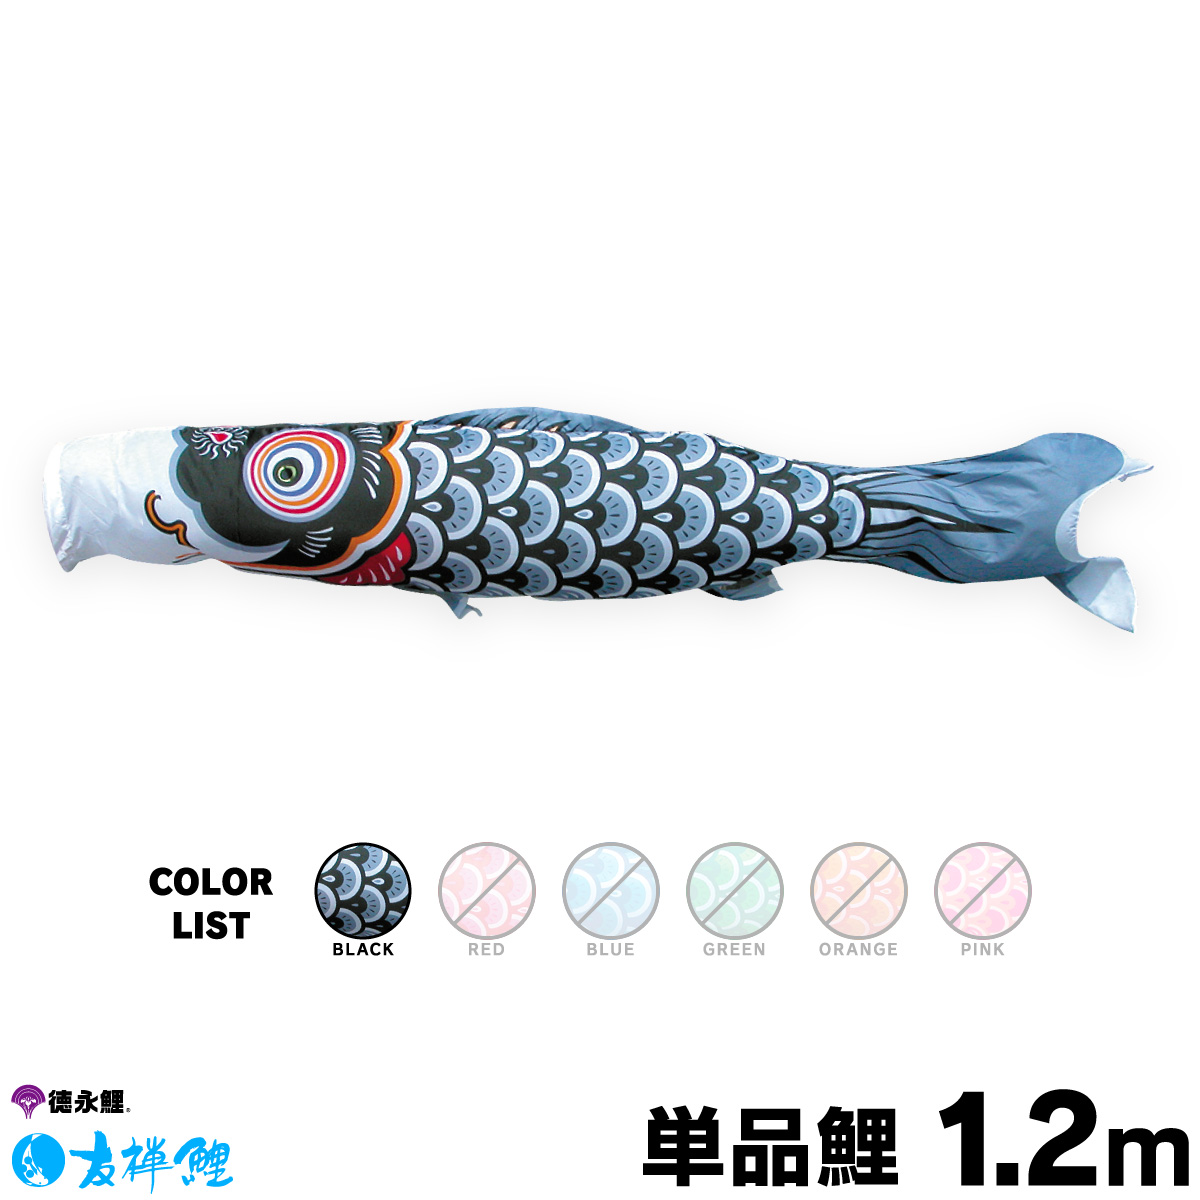 【楽天市場】こいのぼり 単品 鯉のぼり 友禅鯉 1.5m 単品鯉 黒 赤 青 